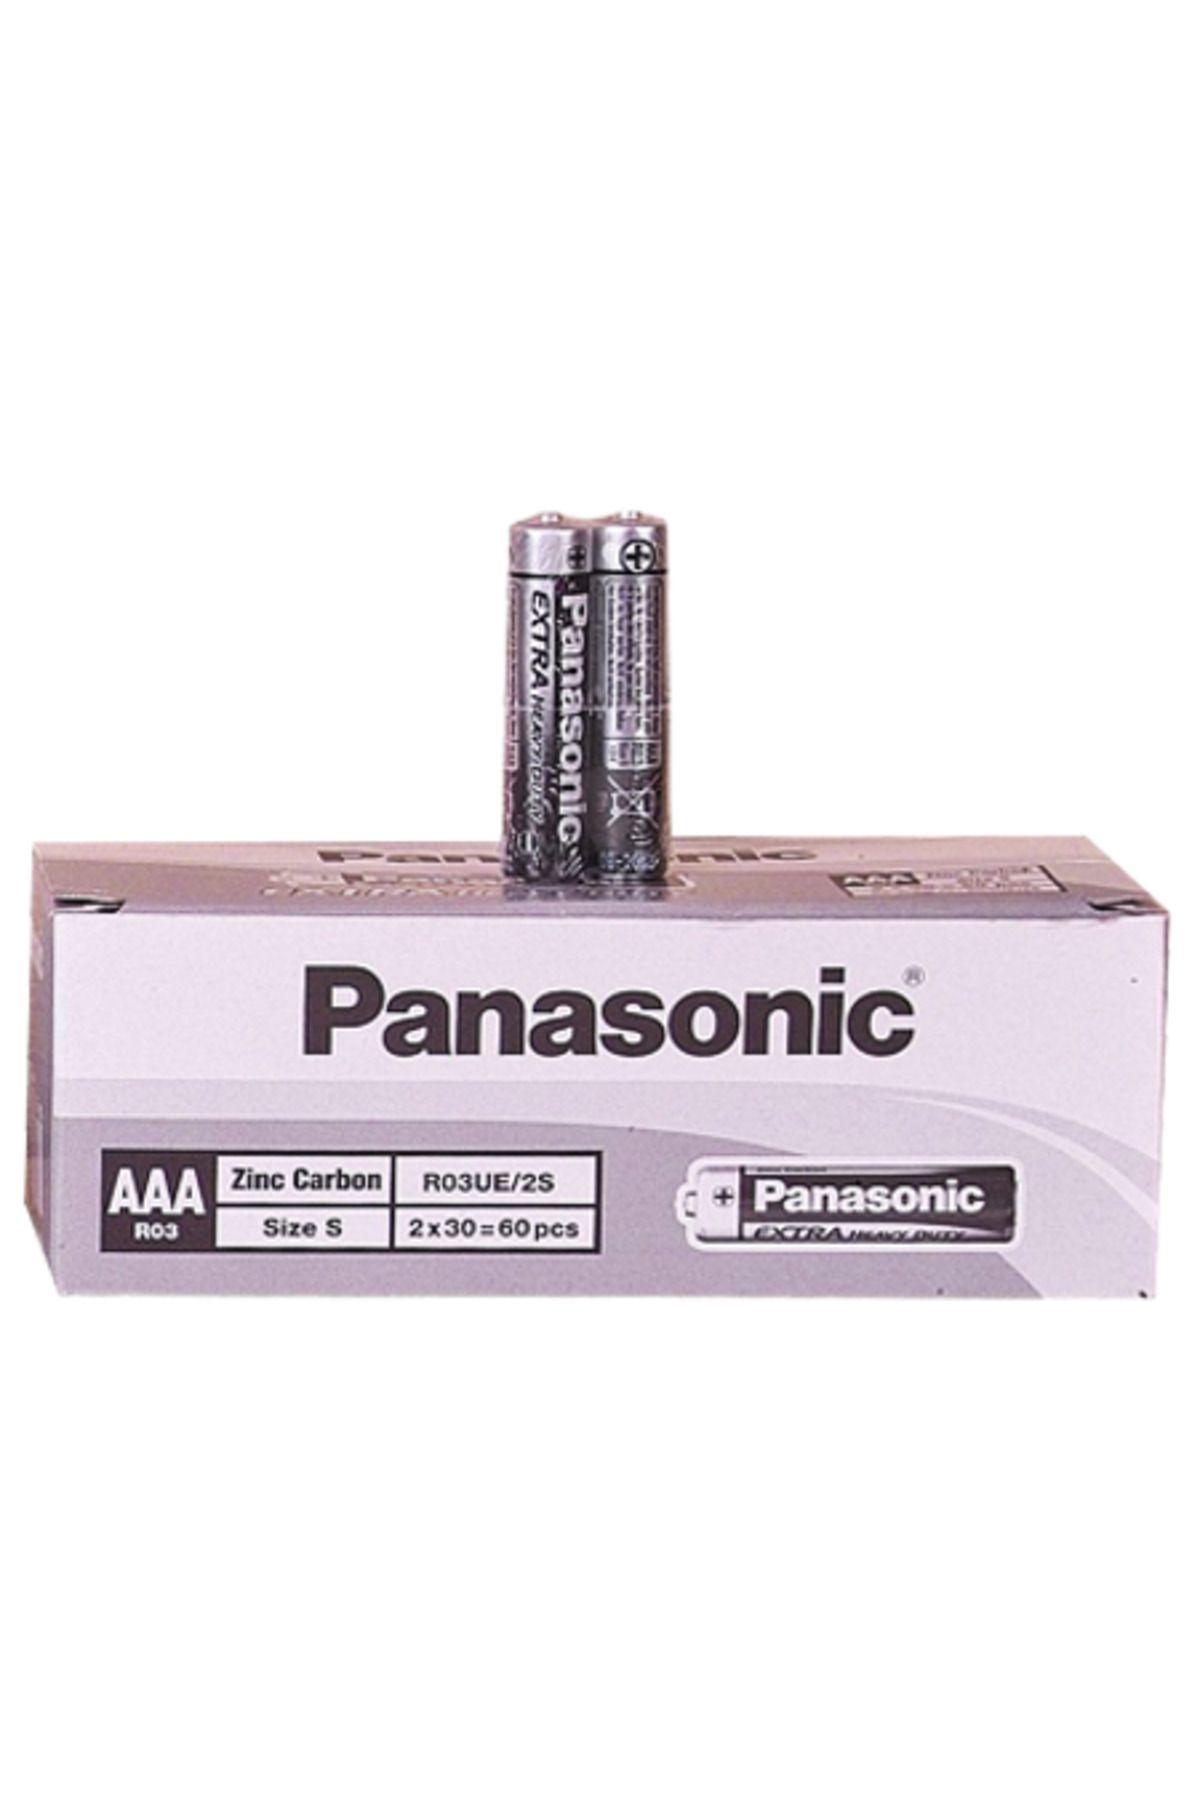 Epilons Panasonic İnce Pil Aaa 60lı Paket